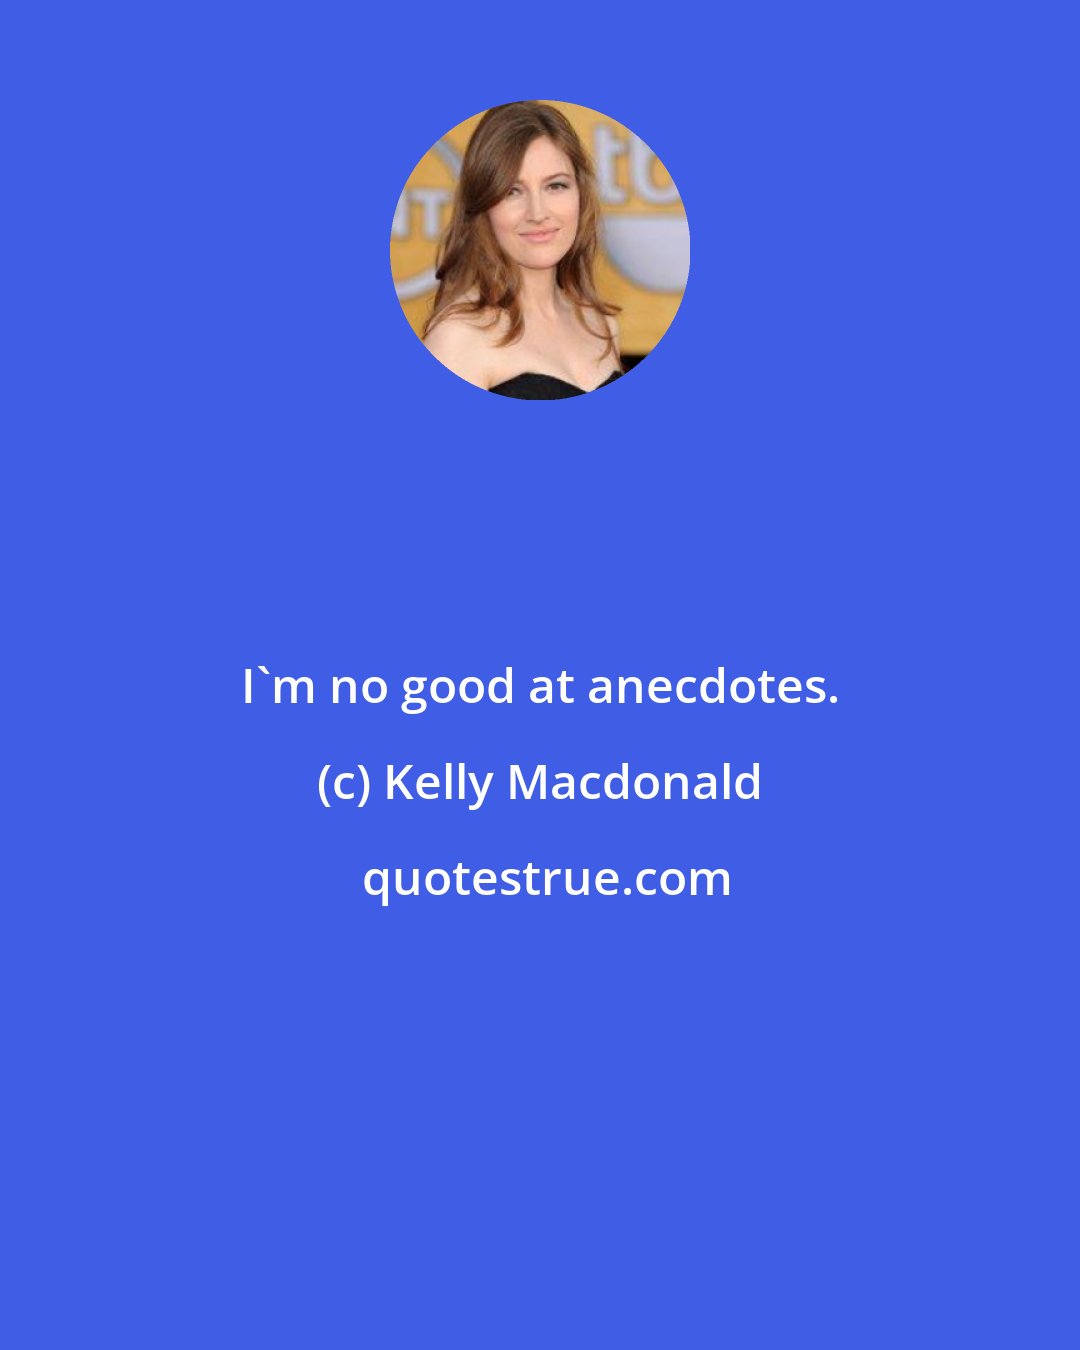 Kelly Macdonald: I'm no good at anecdotes.